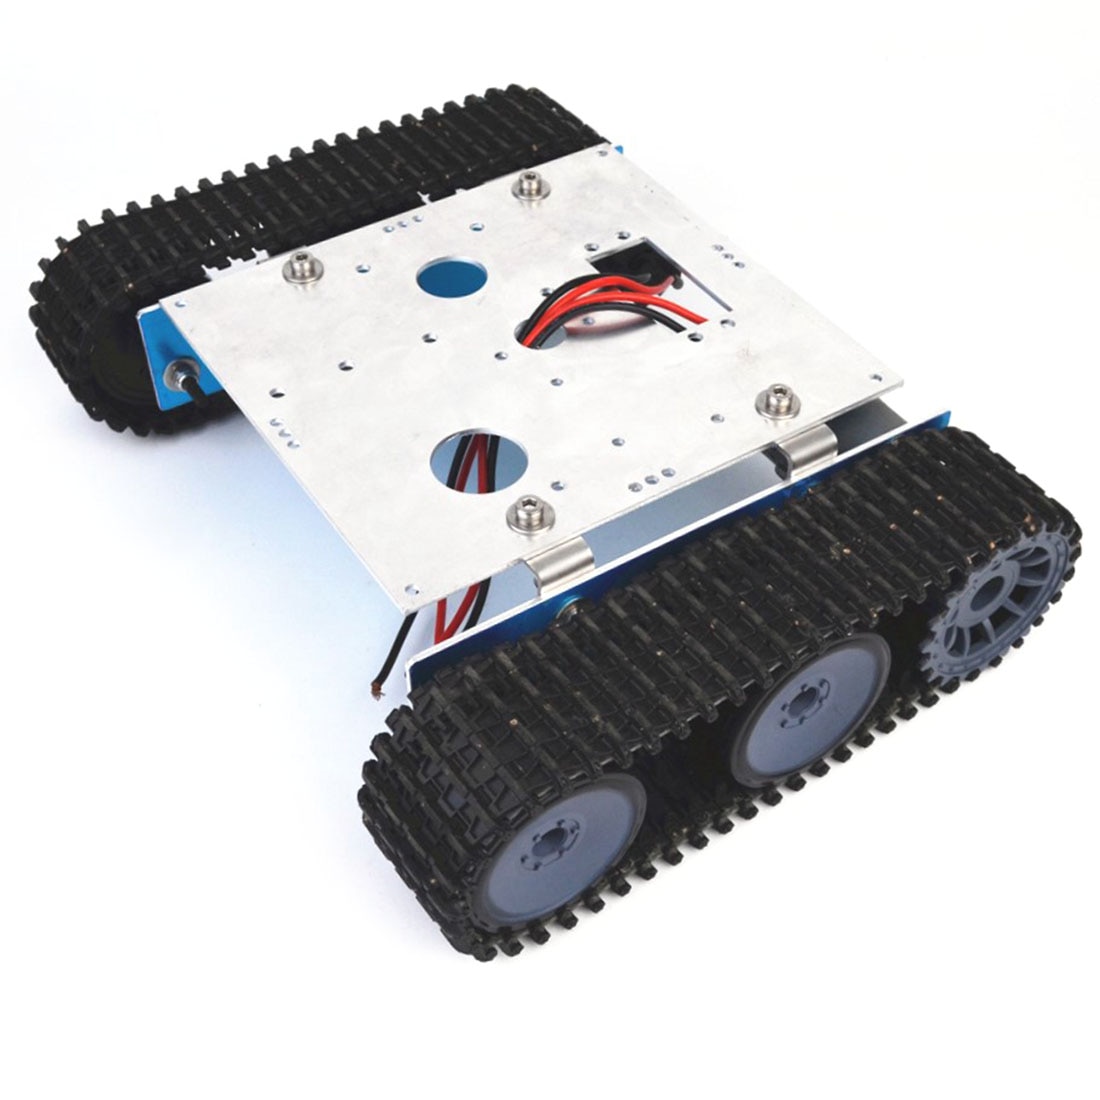 Diy Aluminium Tank Robot Rups Voertuig Platform Chassis Assembly Kit Voor Arduino Educatief Speelgoed Cadeau Voor Kid Adult